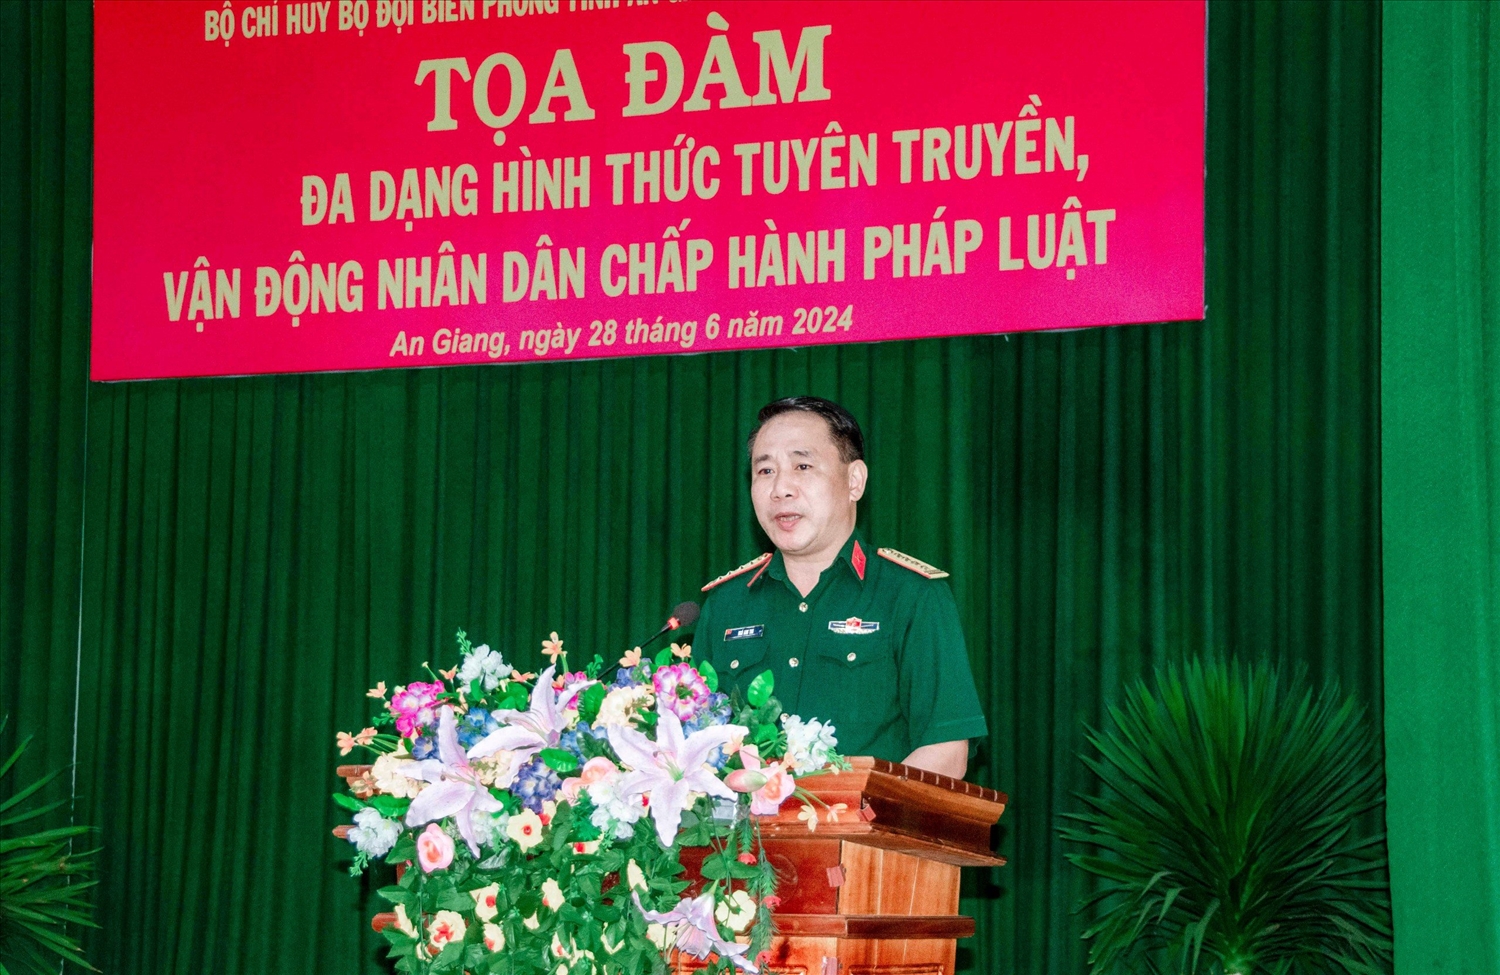 Đại tá Ngô Anh Thu - Phó Tổng biên tập Báo Quân đội Nhân dân phát biểu đề dẫn tại toạ đàm 